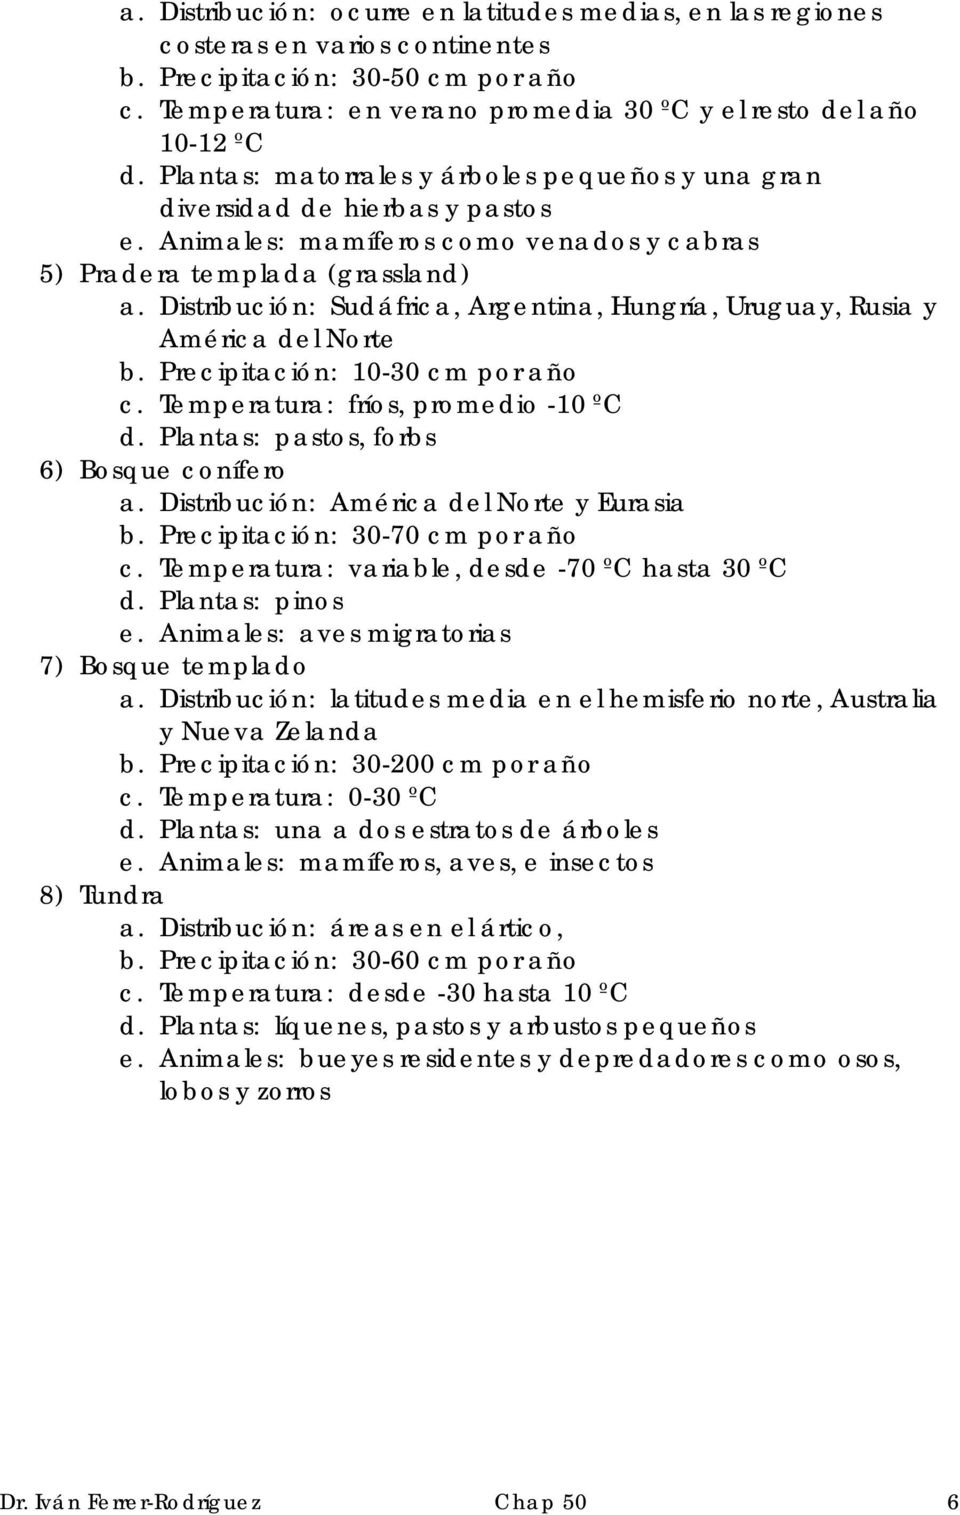 Distribución: Sudáfrica, Argentina, Hungría, Uruguay, Rusia y América del Norte b. Precipitación: 10-30 cm por año c. Temperatura: fríos, promedio -10 ºC d.